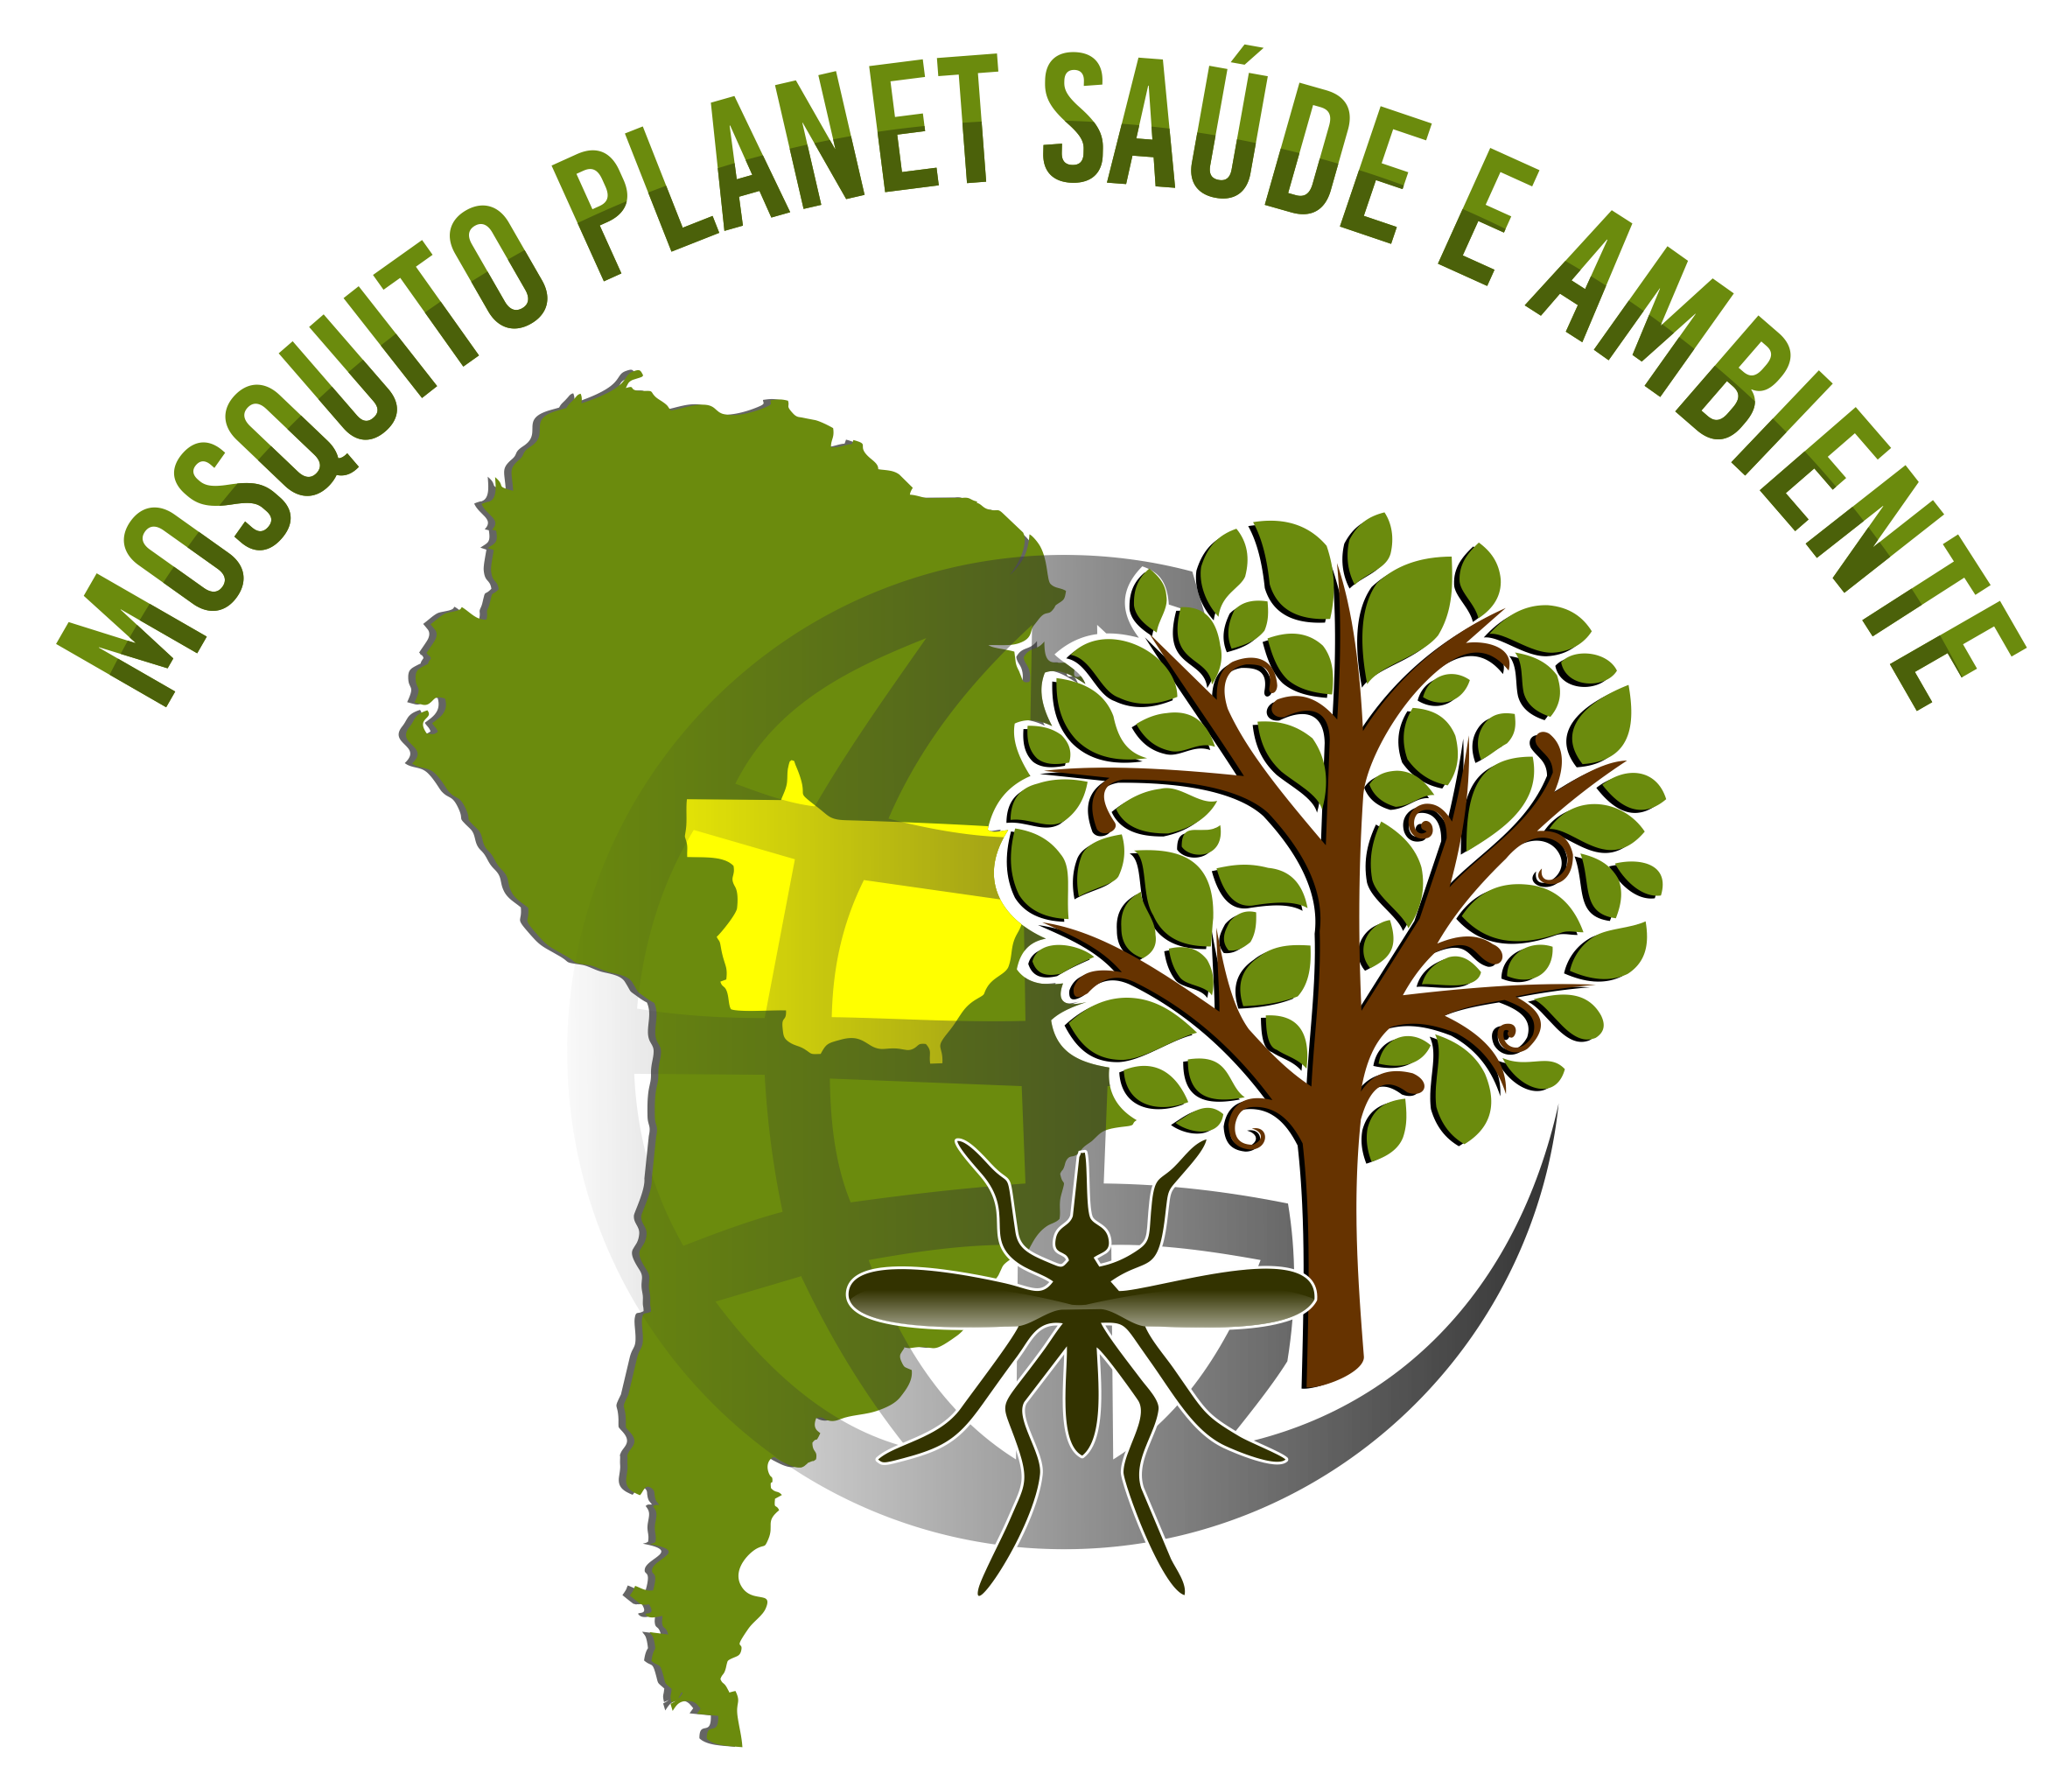 Logo-Mosquito-Planet-Saúde-Ambiente-fundo-transparente